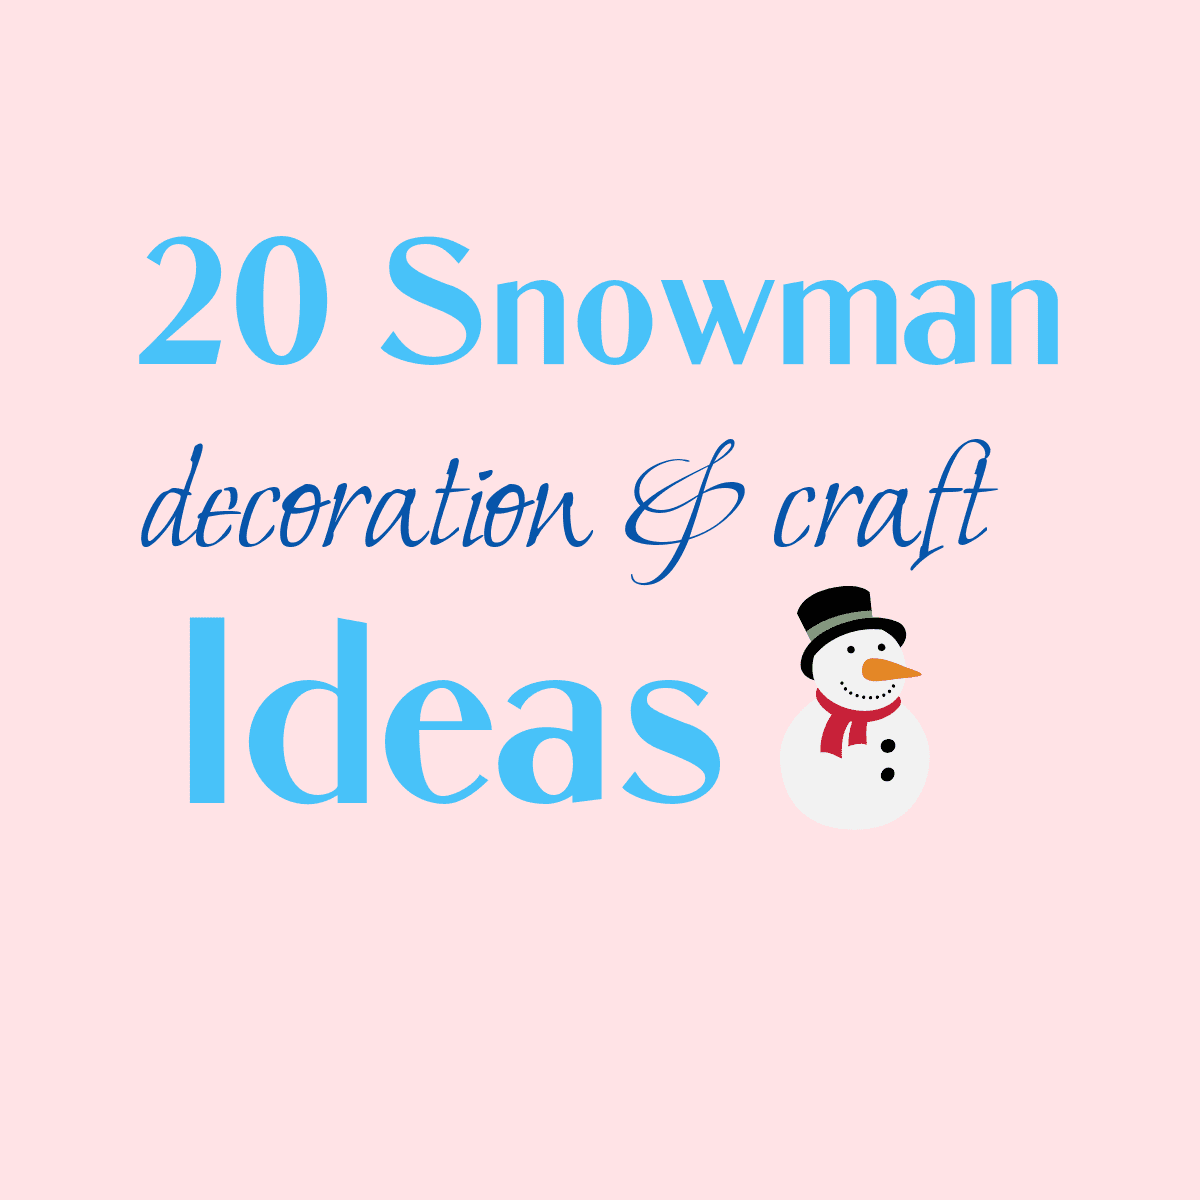 snowman decoration ideas image.